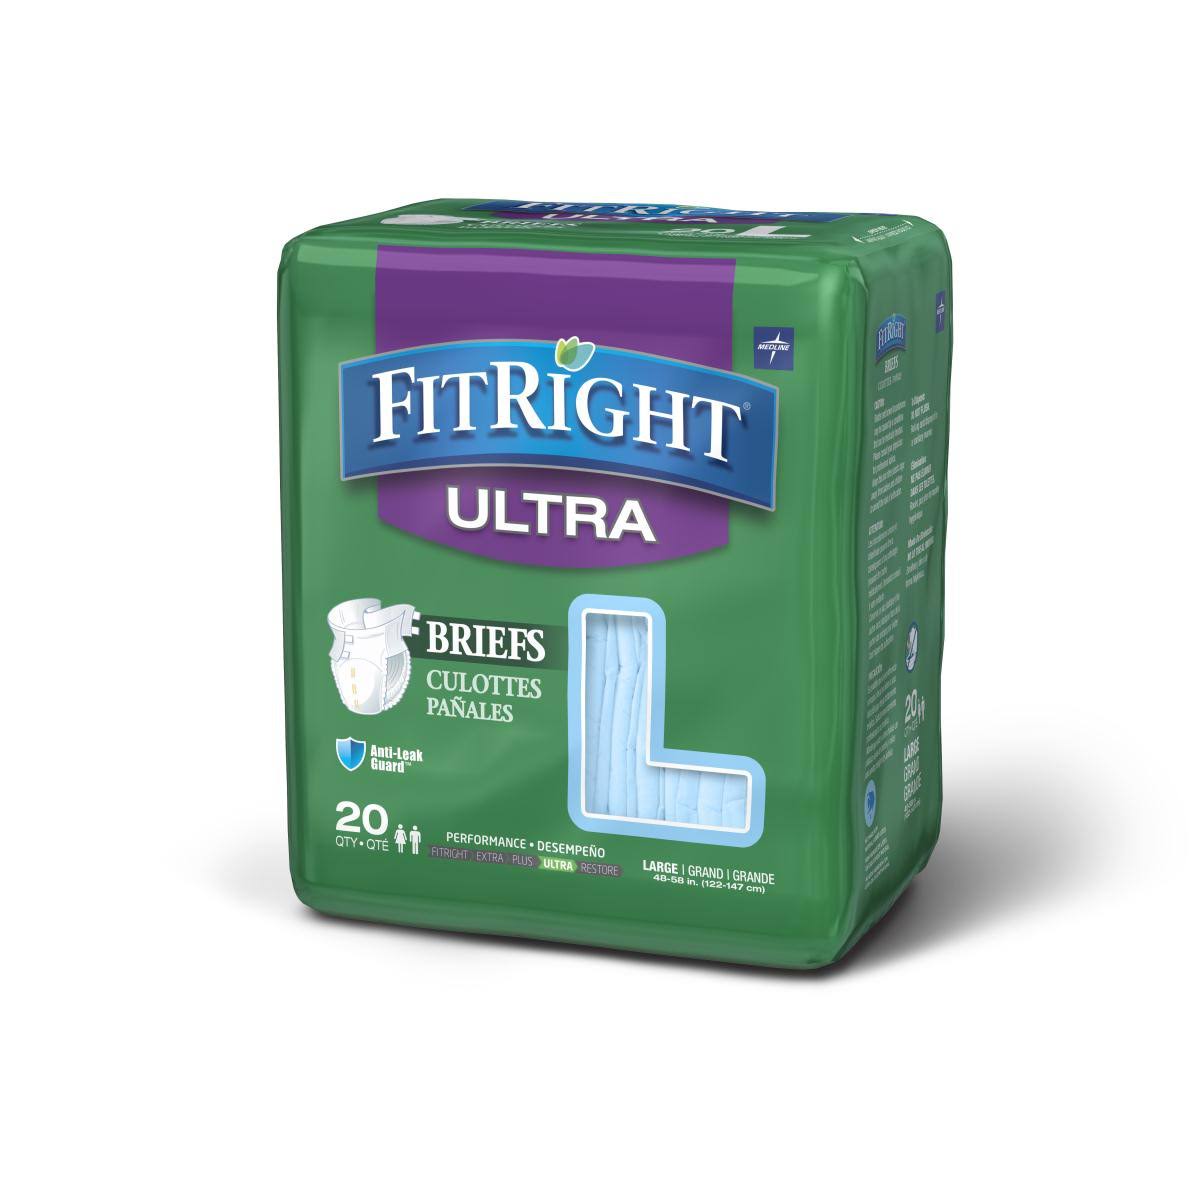 Medline Fitright Ultra Briefs - Small, 20-32", 20ct